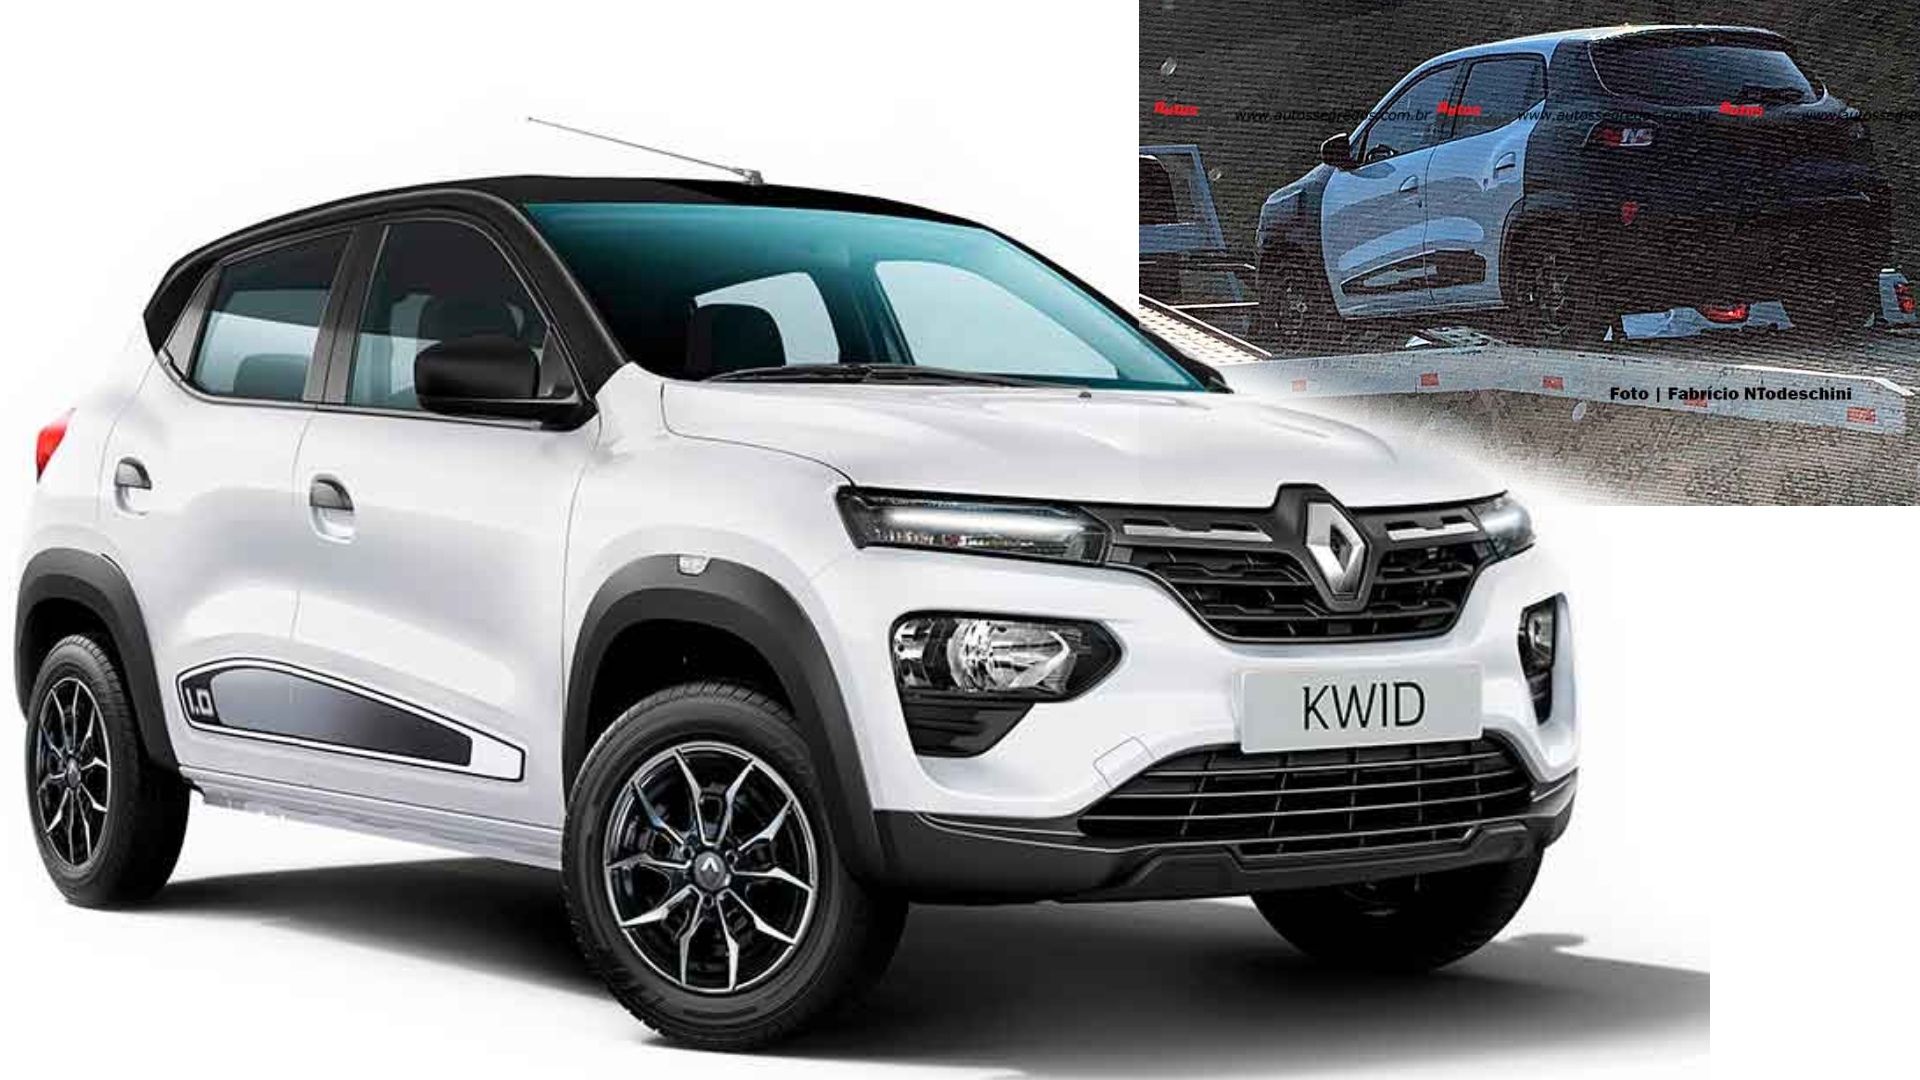 El nuevo Renault Kwid (restyling) aparece en la región, ¿cómo será